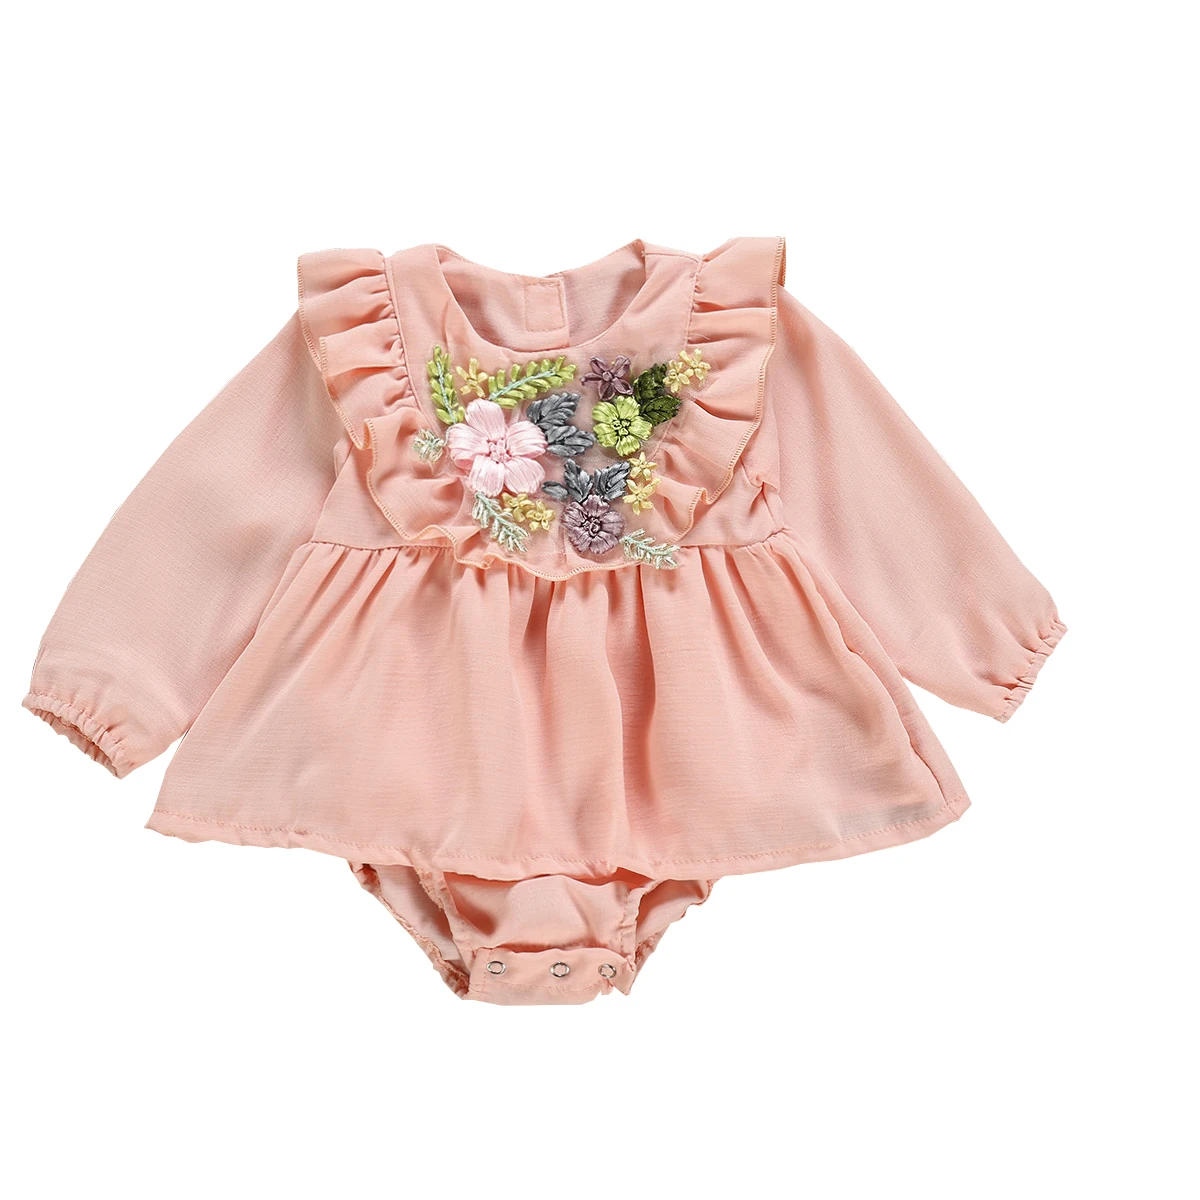 От Carter's, детский костюмчик, одежда для малышей Одежда для девочек с оборками 3D и цветами, с длинными рукавами, боди, комбинезоны, костюмы Размеры на возраст от 0 до 24 месяцев - Цвет: Розовый